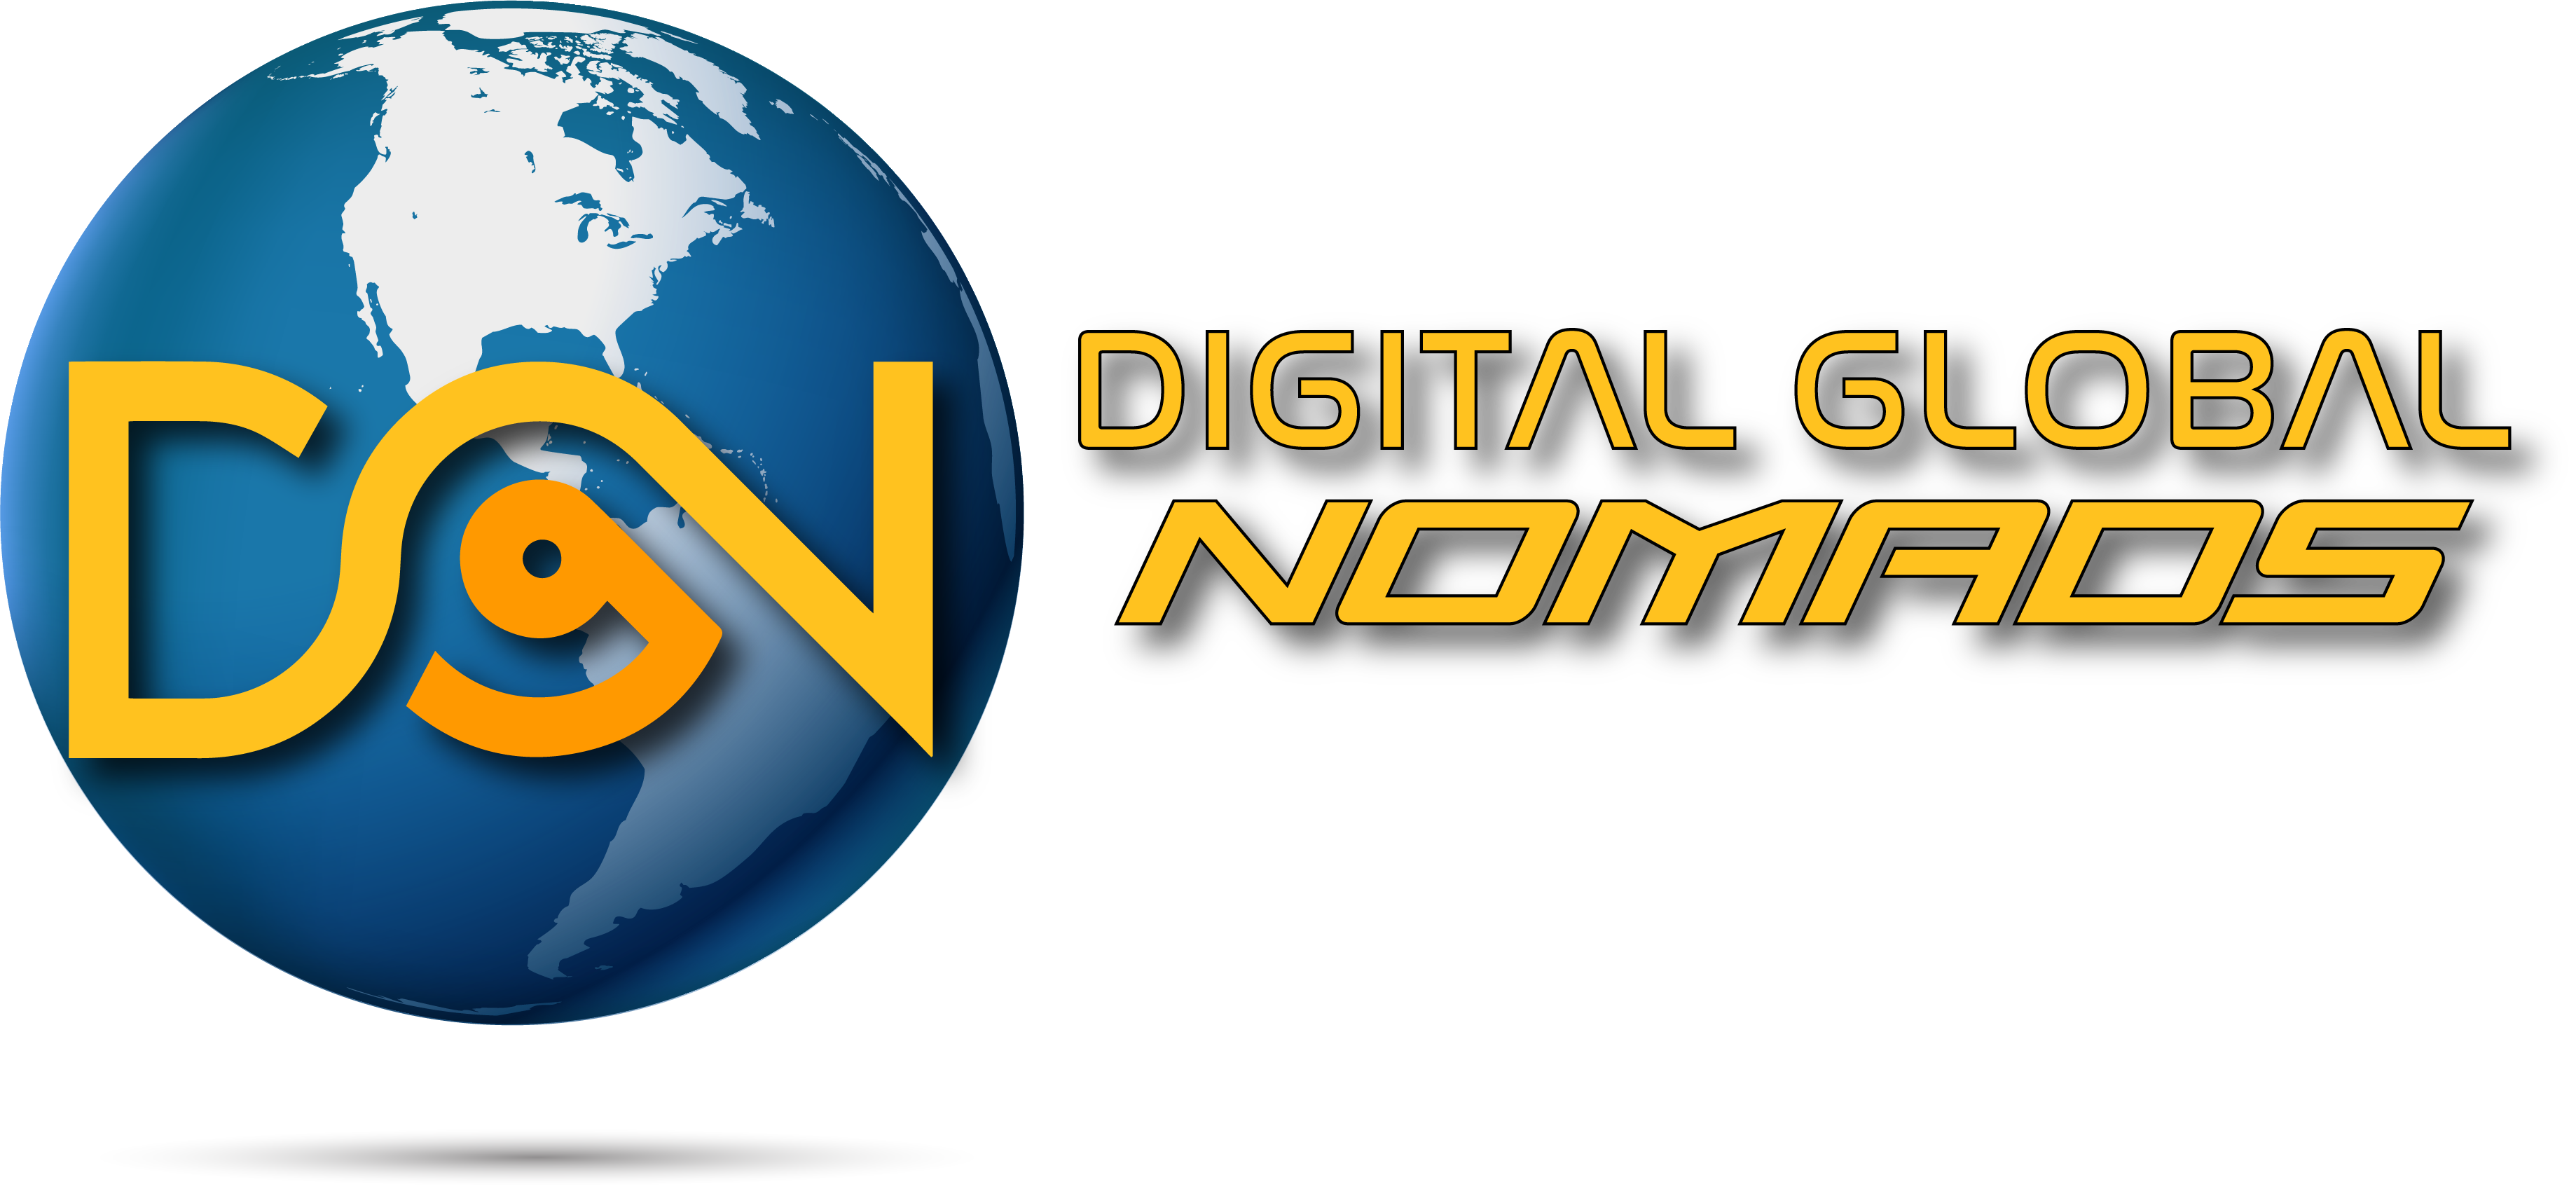 Digital Global Nomads